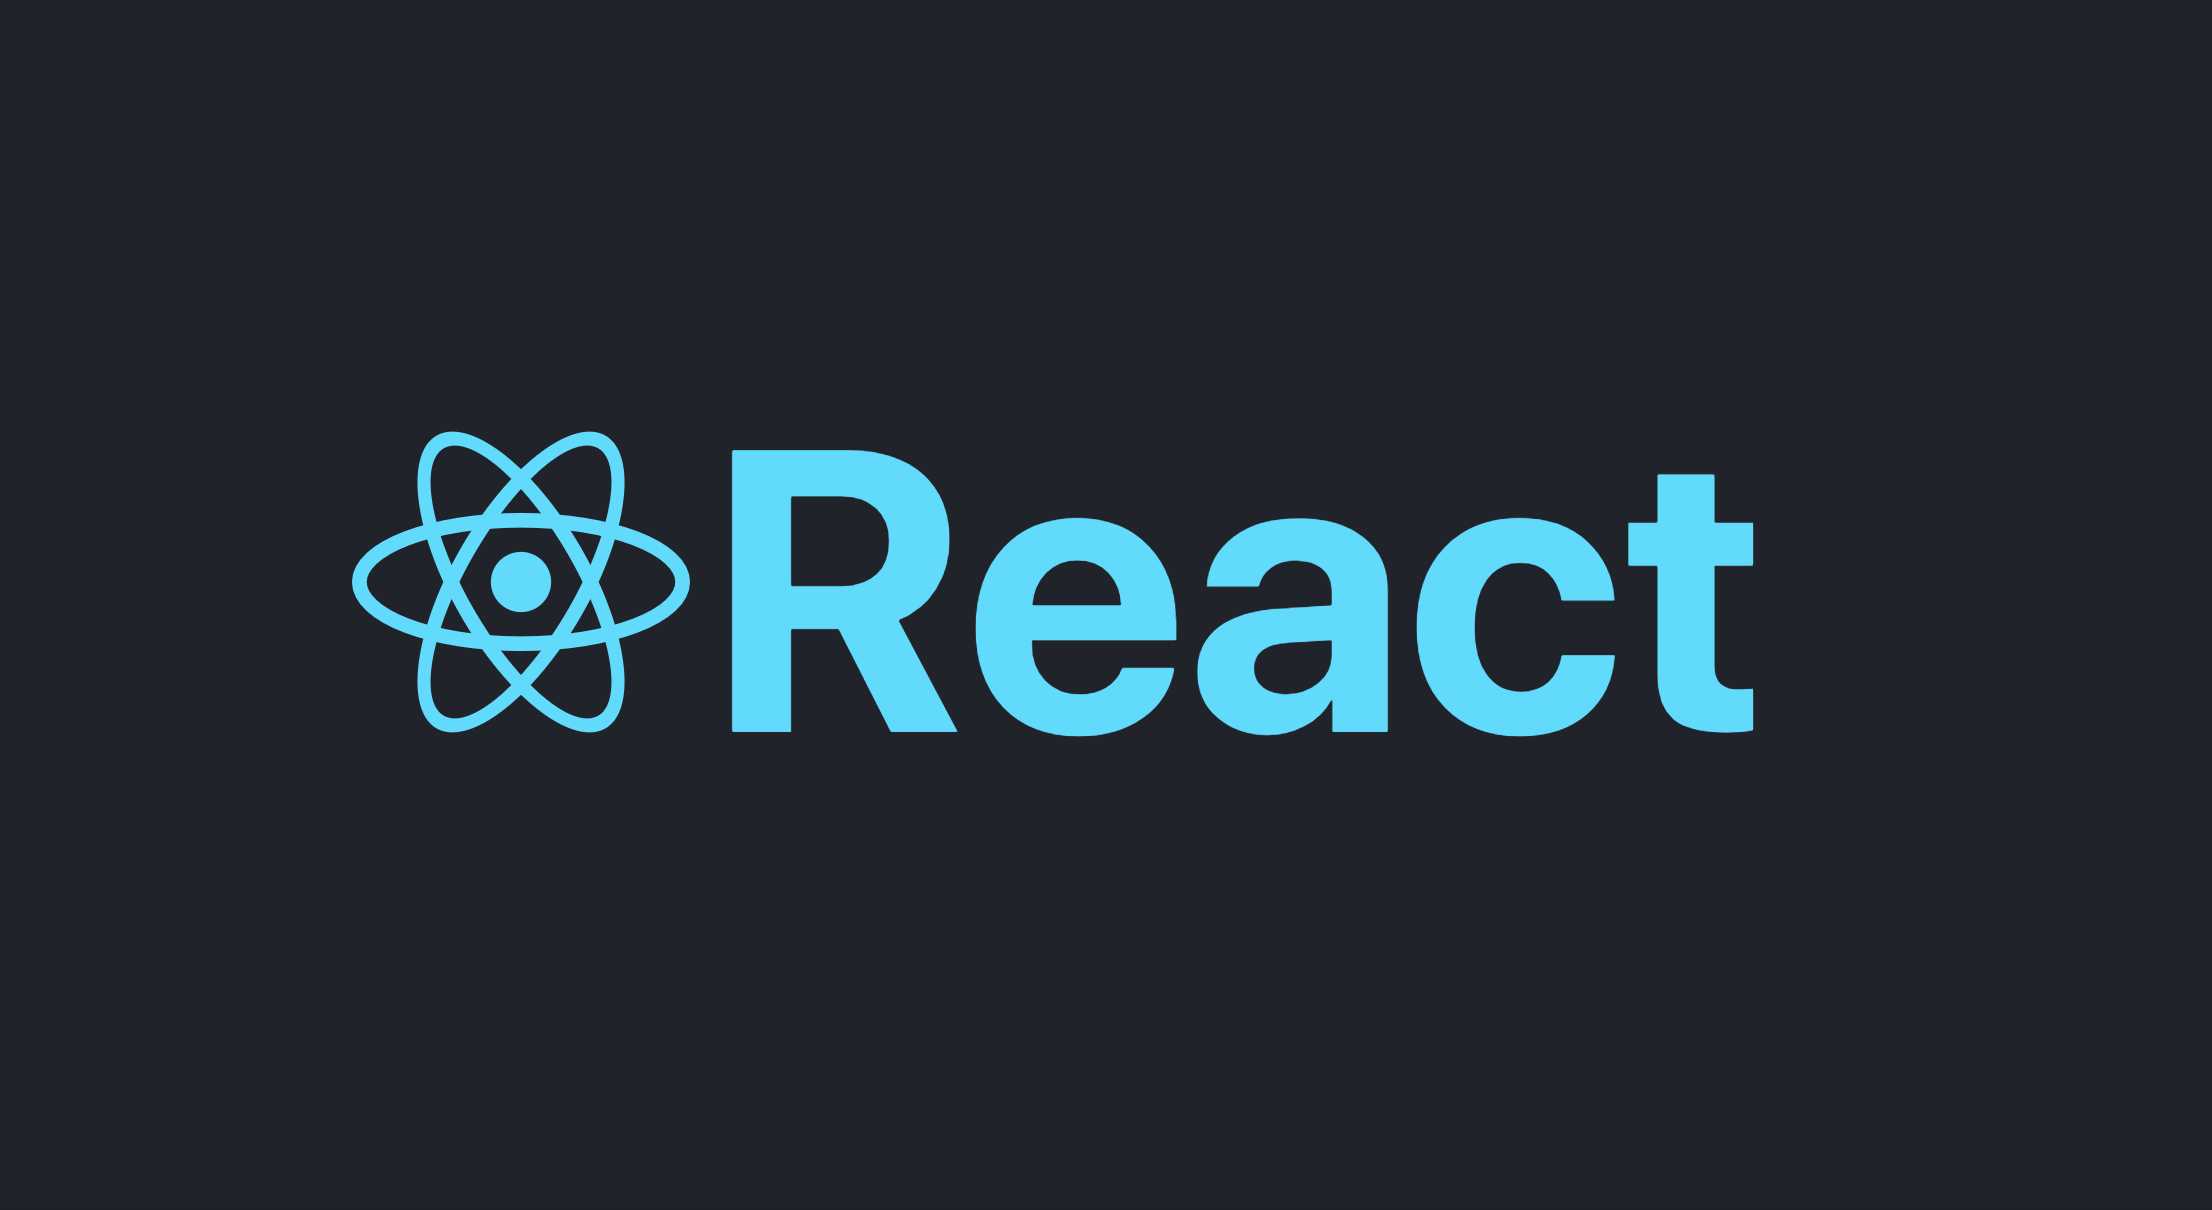 ریکت (react) چیست ؟ چه کاربردی دارد ؟